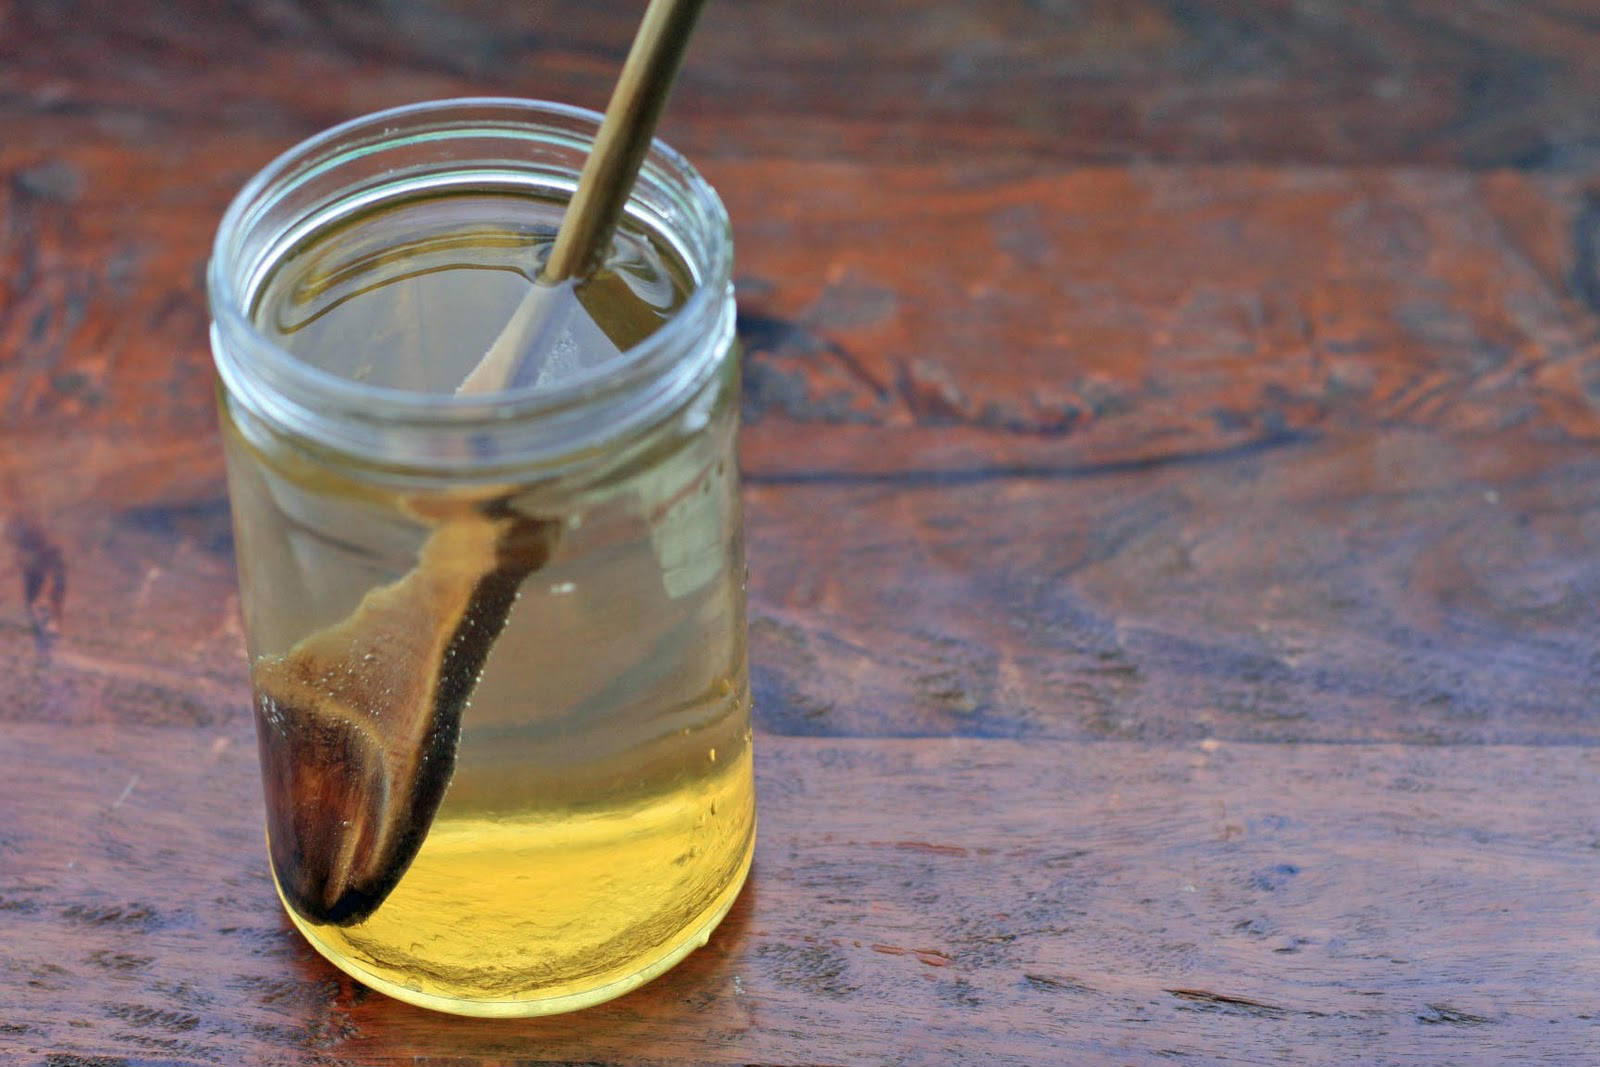 Мед разведенный водой. Мед растворенный в воде. Стакан с жидкостью. Жижа в стакане. Мед в стакане.